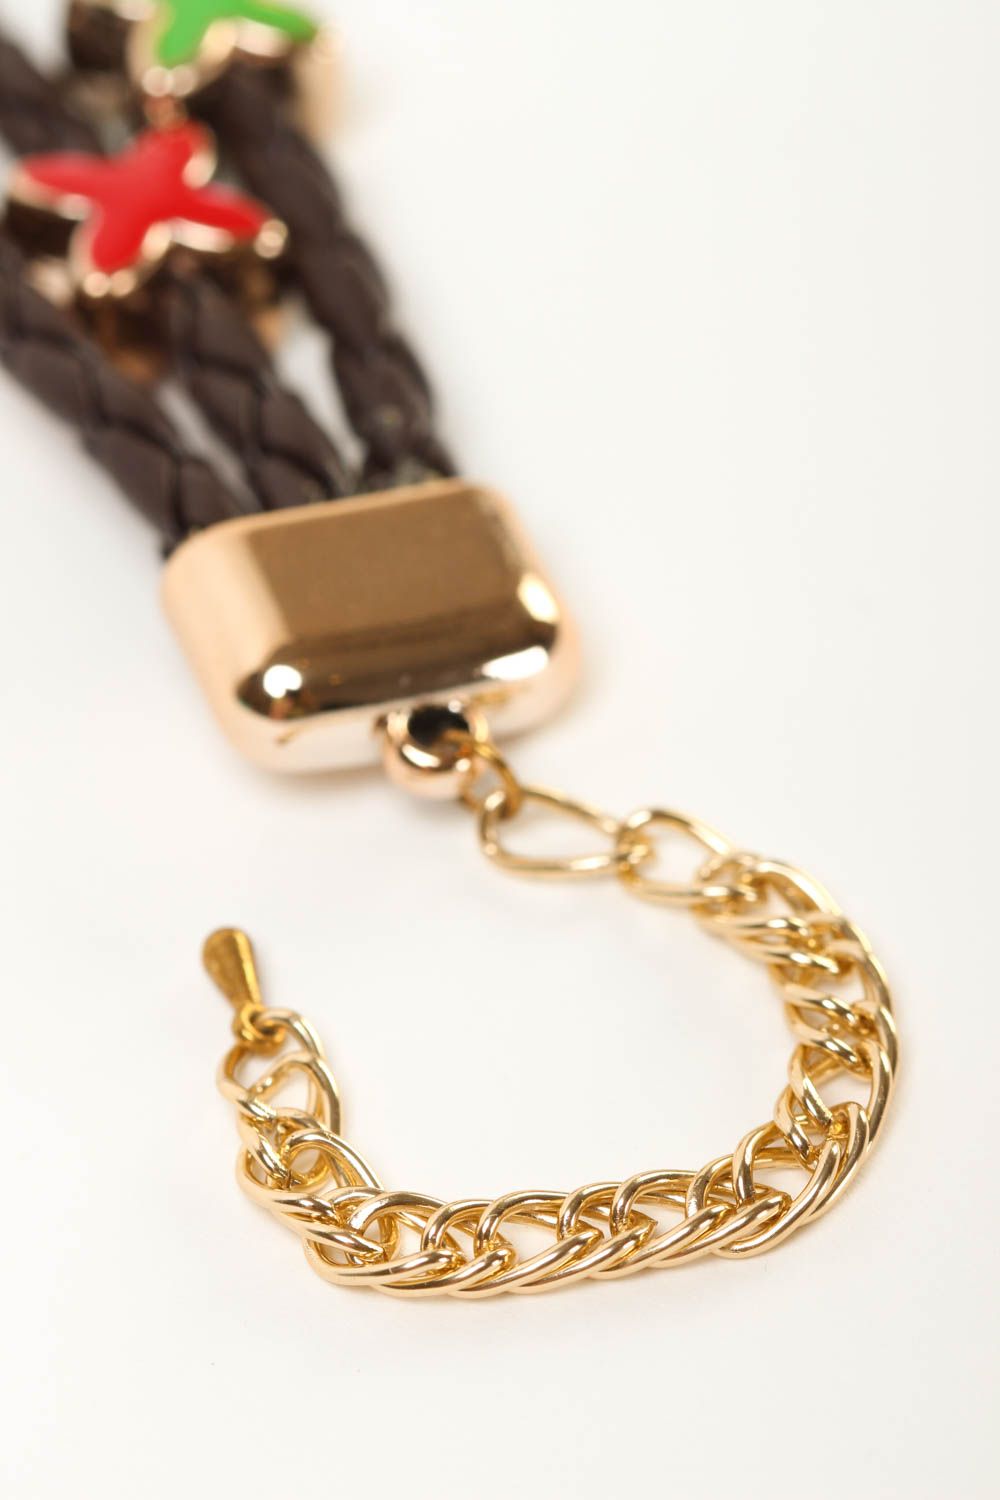 Bracelet noir Bijou fait main 3 rangs cordons de cuir Cadeau pour femme photo 3